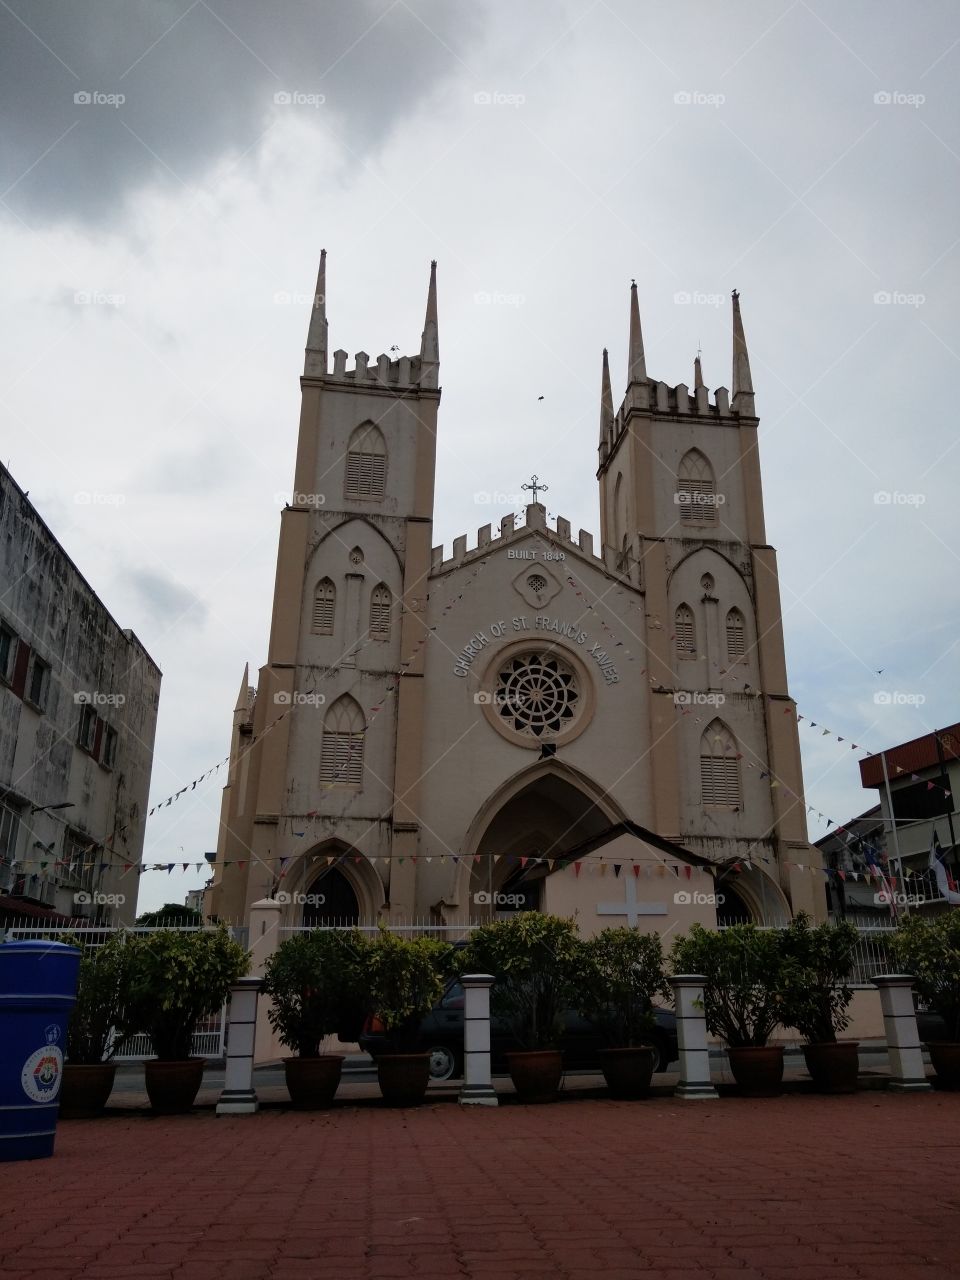 Church of St. Francis Xavier, Melaka